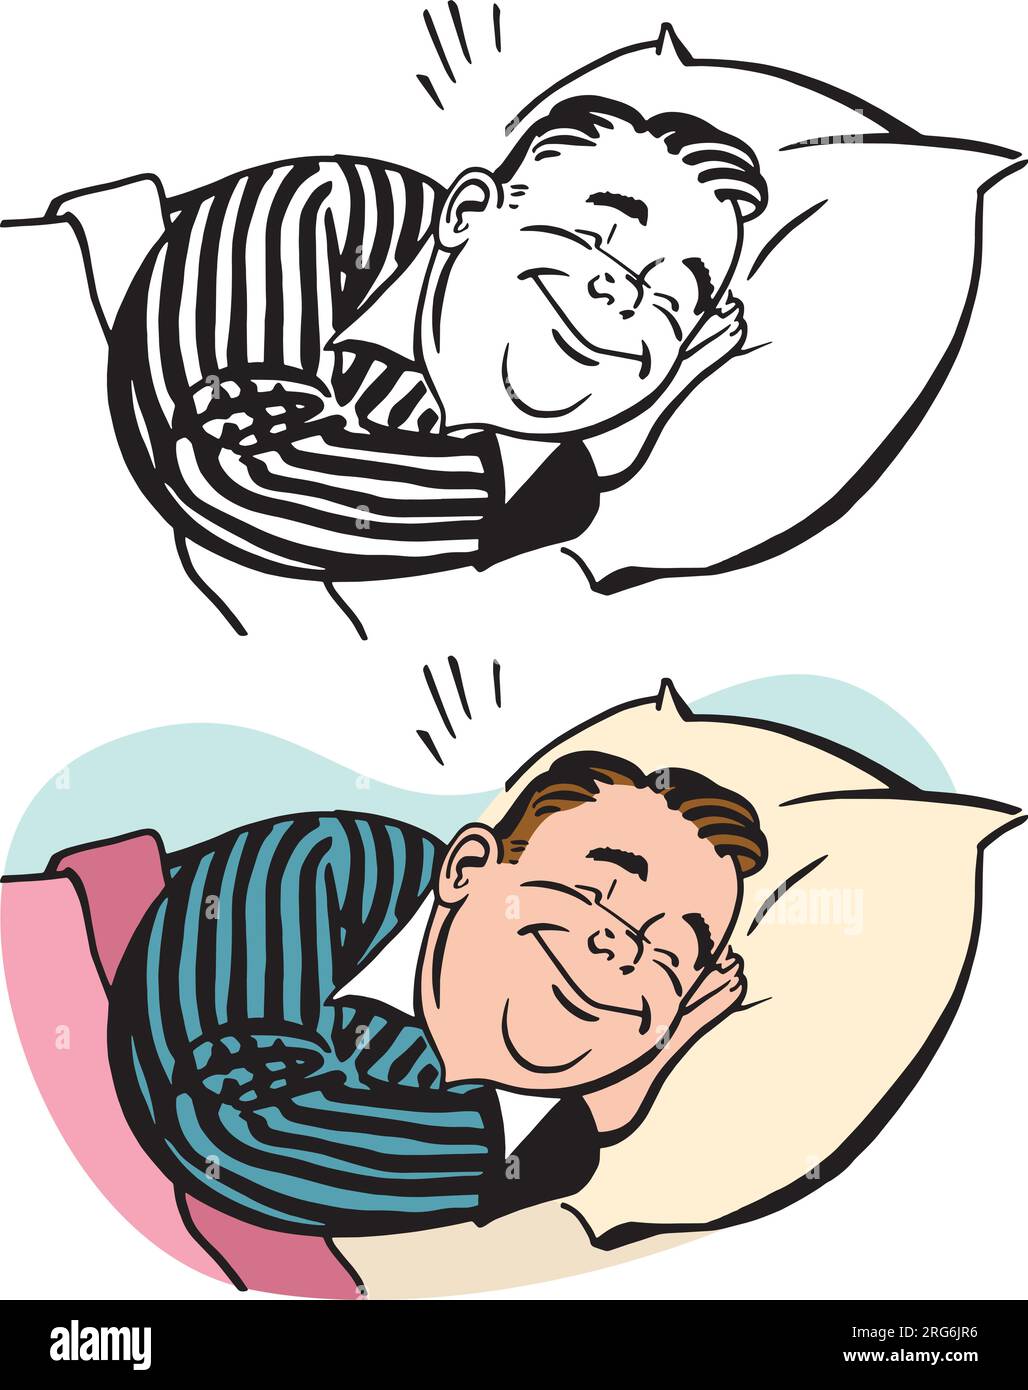 Un dessin animé rétro vintage d'un homme dormant contentement dans son lit. Illustration de Vecteur